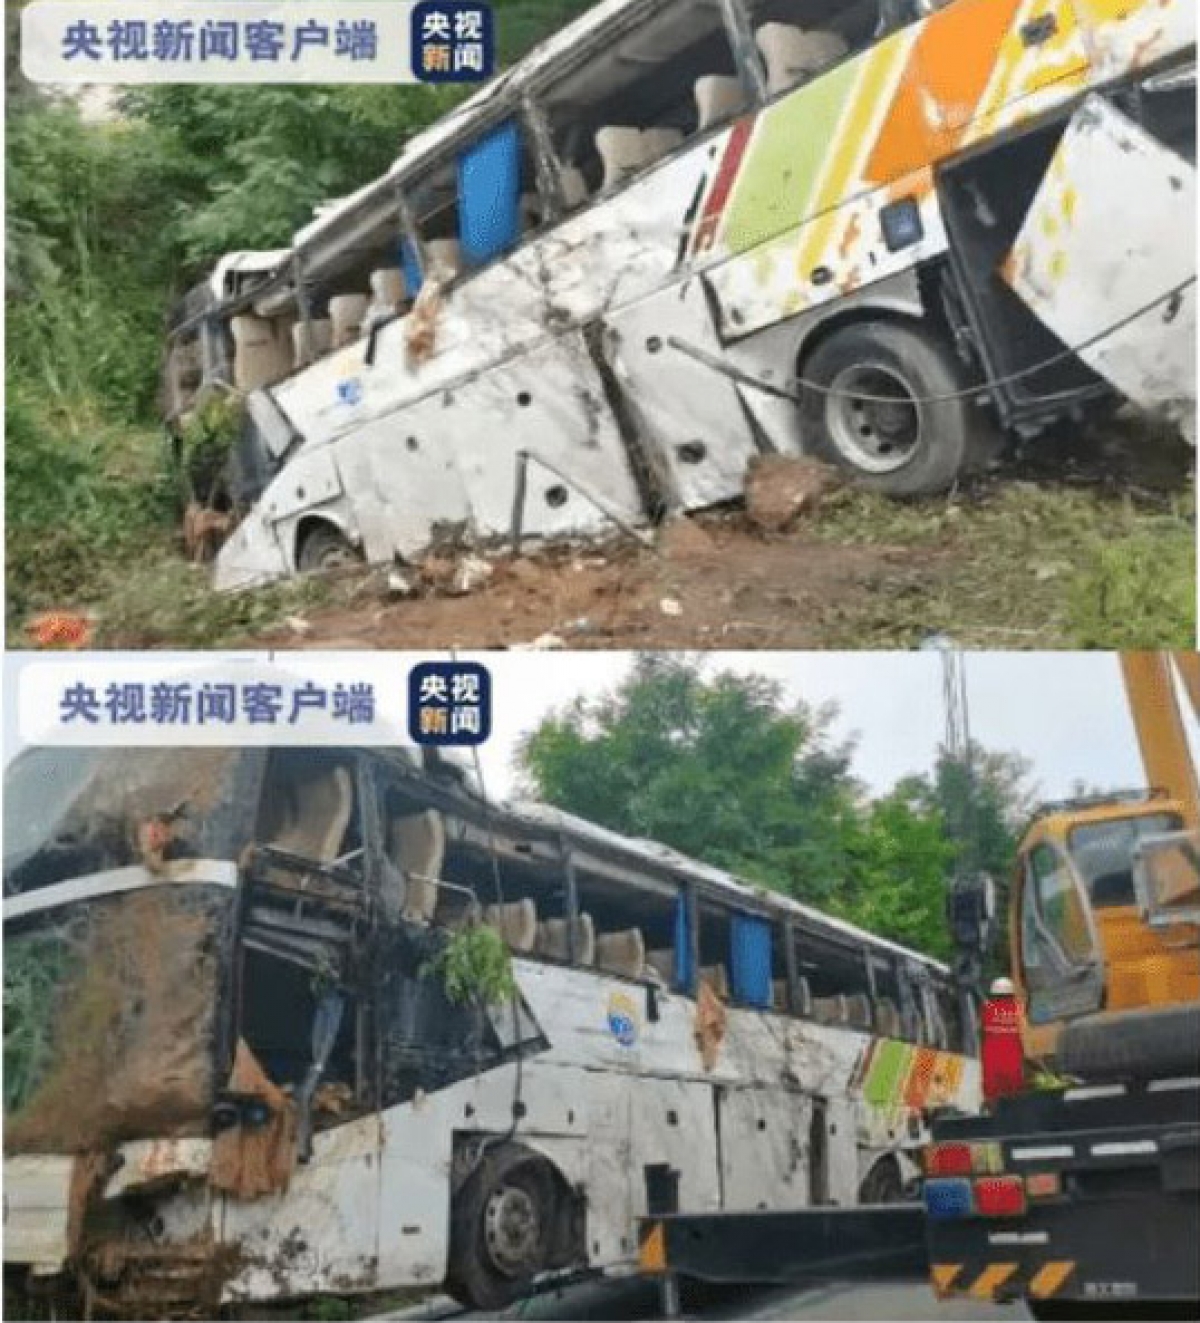 Tai nạn giao thông nghiêm trọng ở Trung Quốc khiến 13 người thiệt mạng